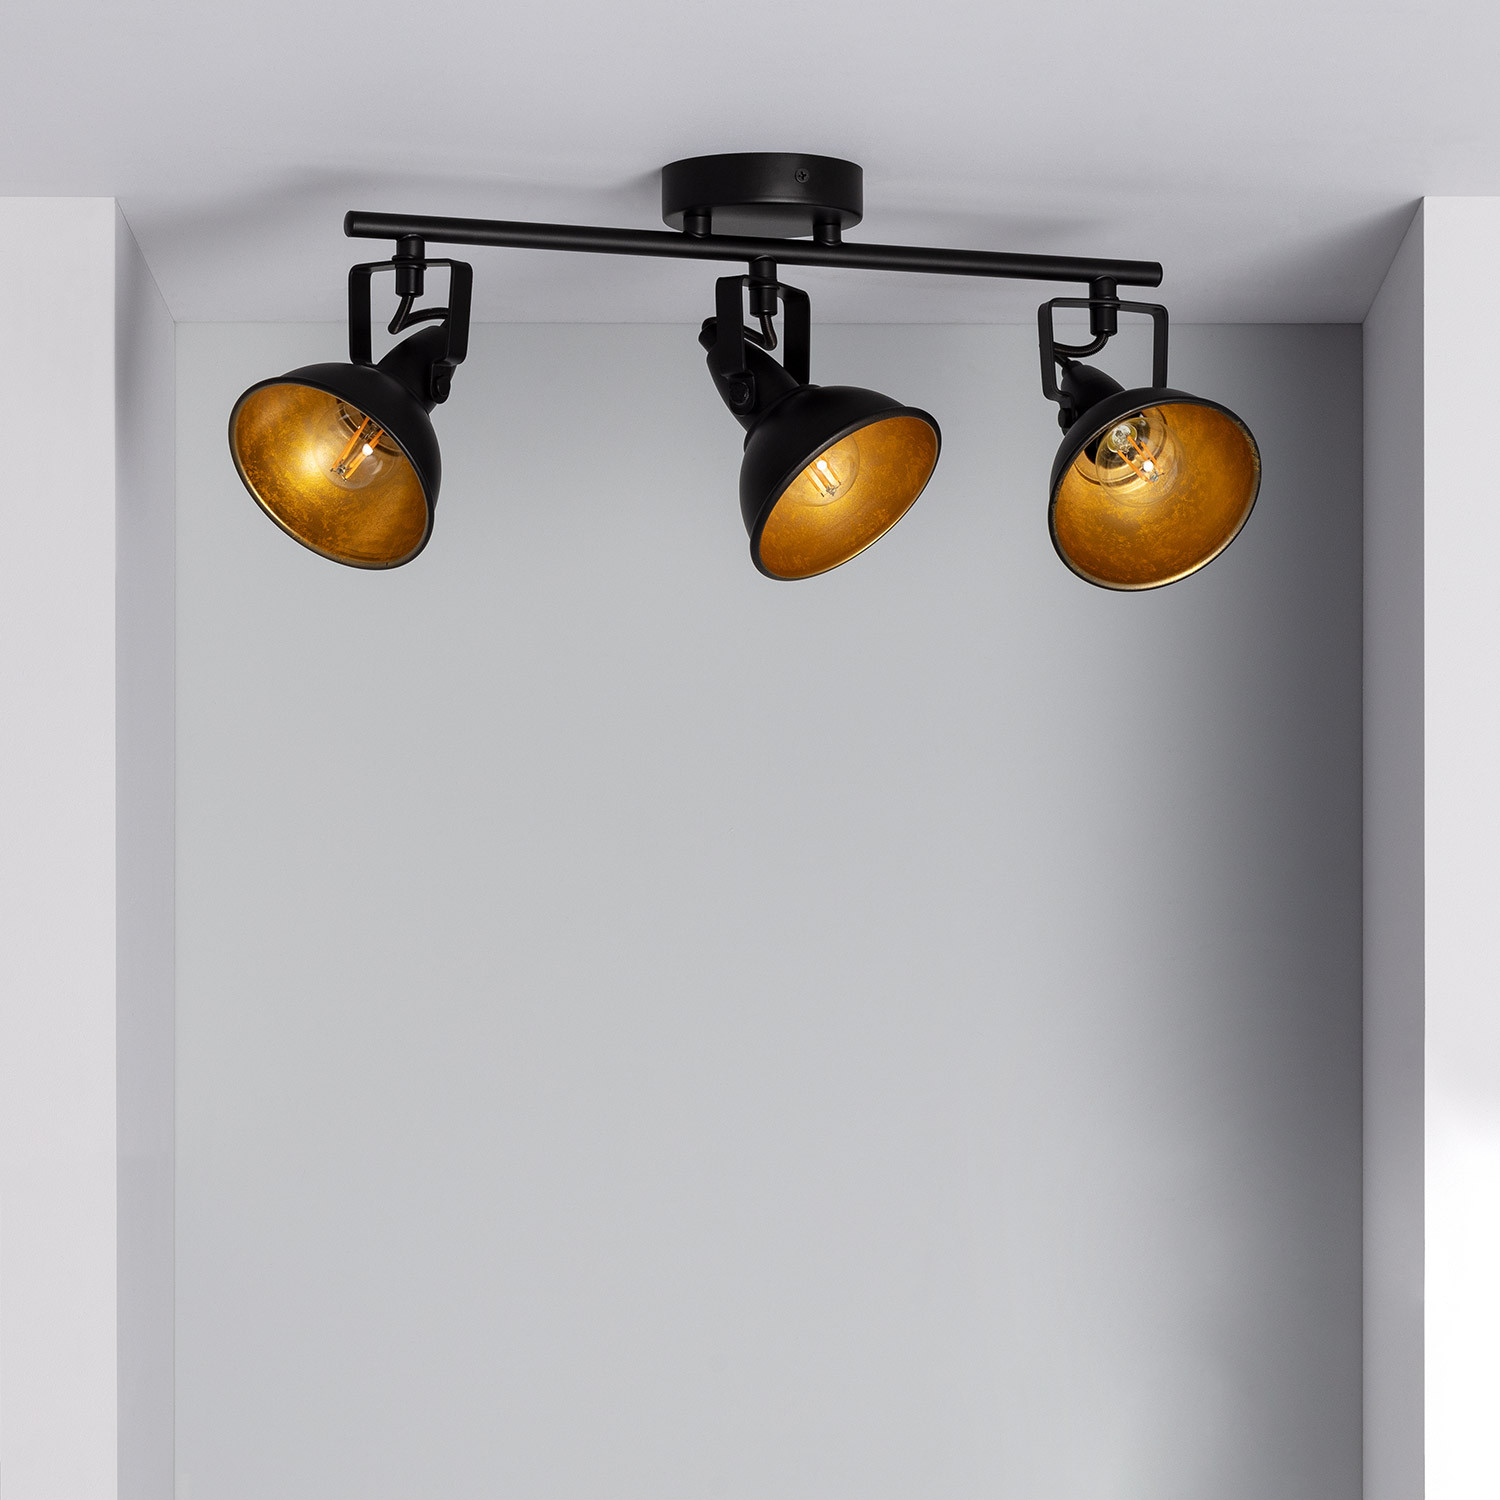 Lámpara de techo Aim Style con 3 focos, fabricada en acero lacado